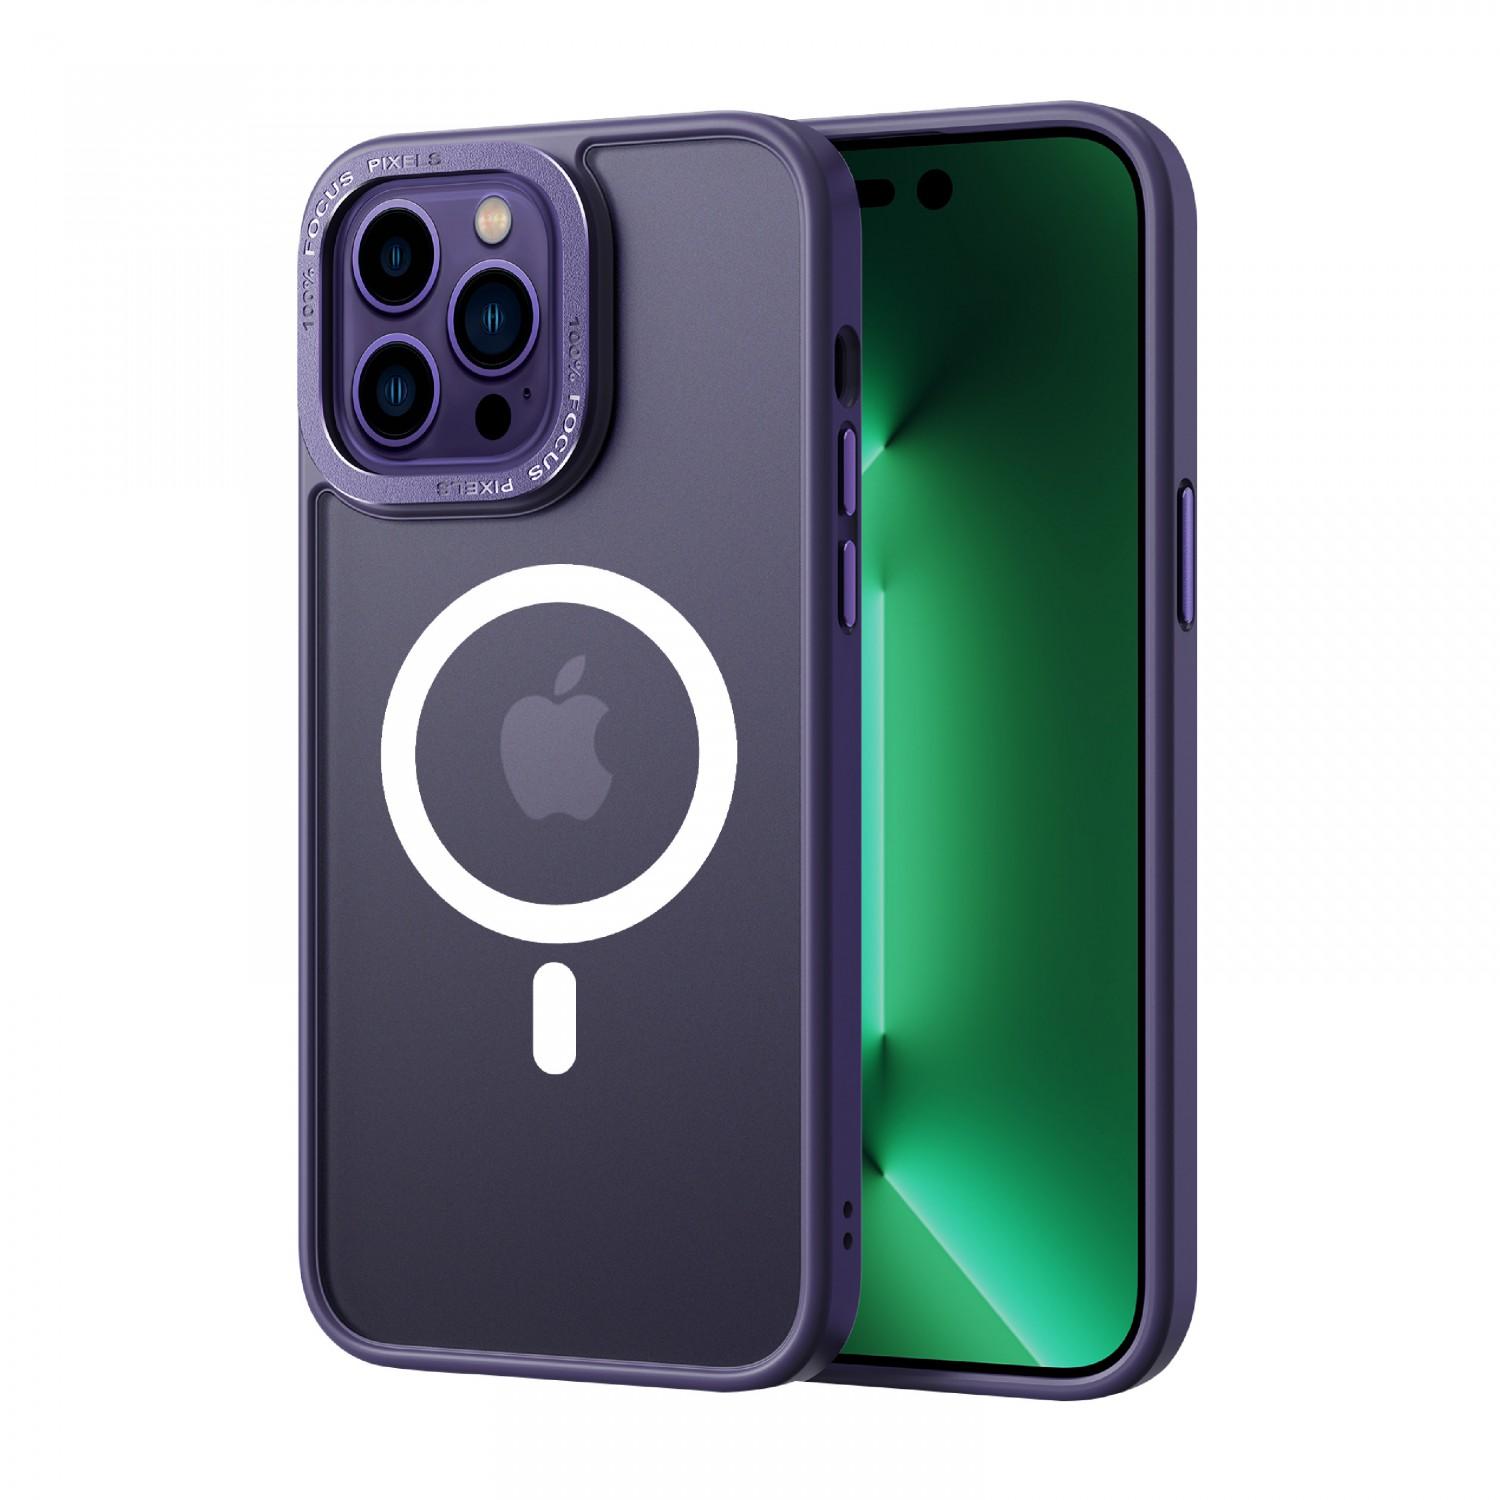 كفر جوال ايفون 14 بروماكس ماج سيف معدني ارجواني من كوما Comma Joy Elegant Metal Magnet Anti Shock Case for iPhone 14 Pro Max ( 6.7" ) Purple